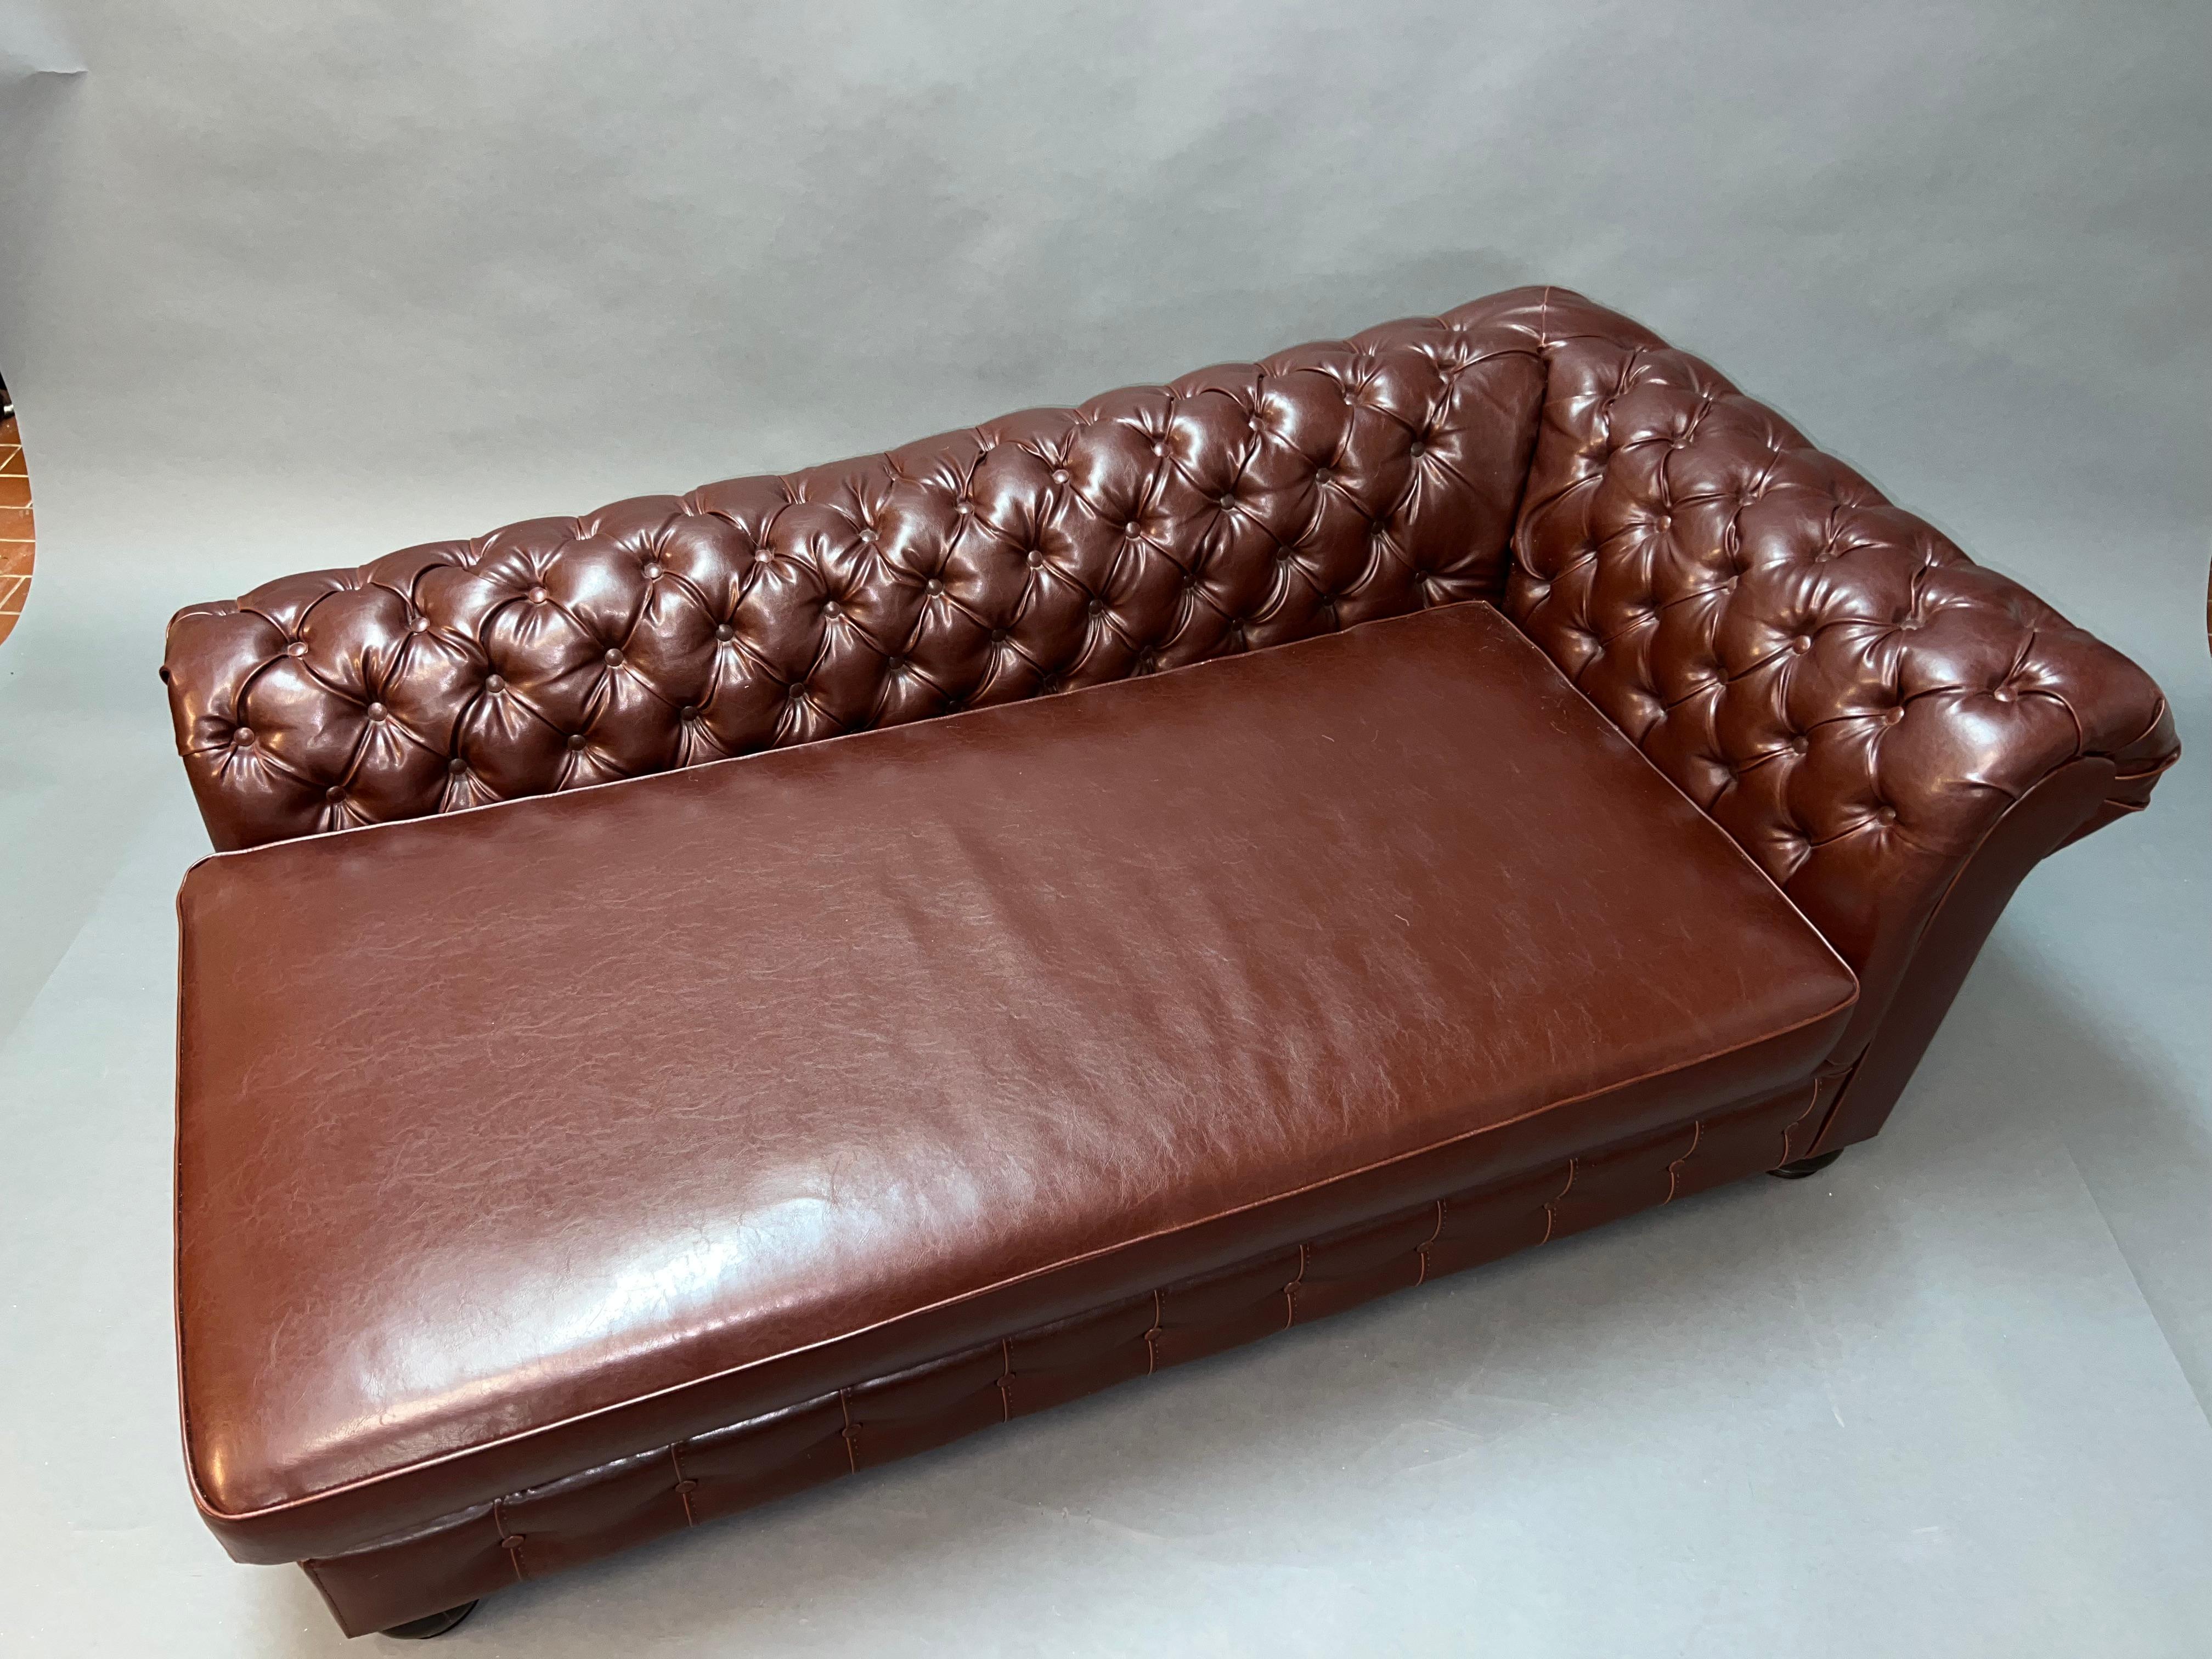 Wir freuen uns, dieses schöne braune Leder Chesterfield Chaise Lounge Daybed zum Verkauf anbieten zu können.

Ein sehr gut aussehendes, gut verarbeitetes und außergewöhnlich bequemes Stück.

Es besteht aus einem lederähnlichen Material.